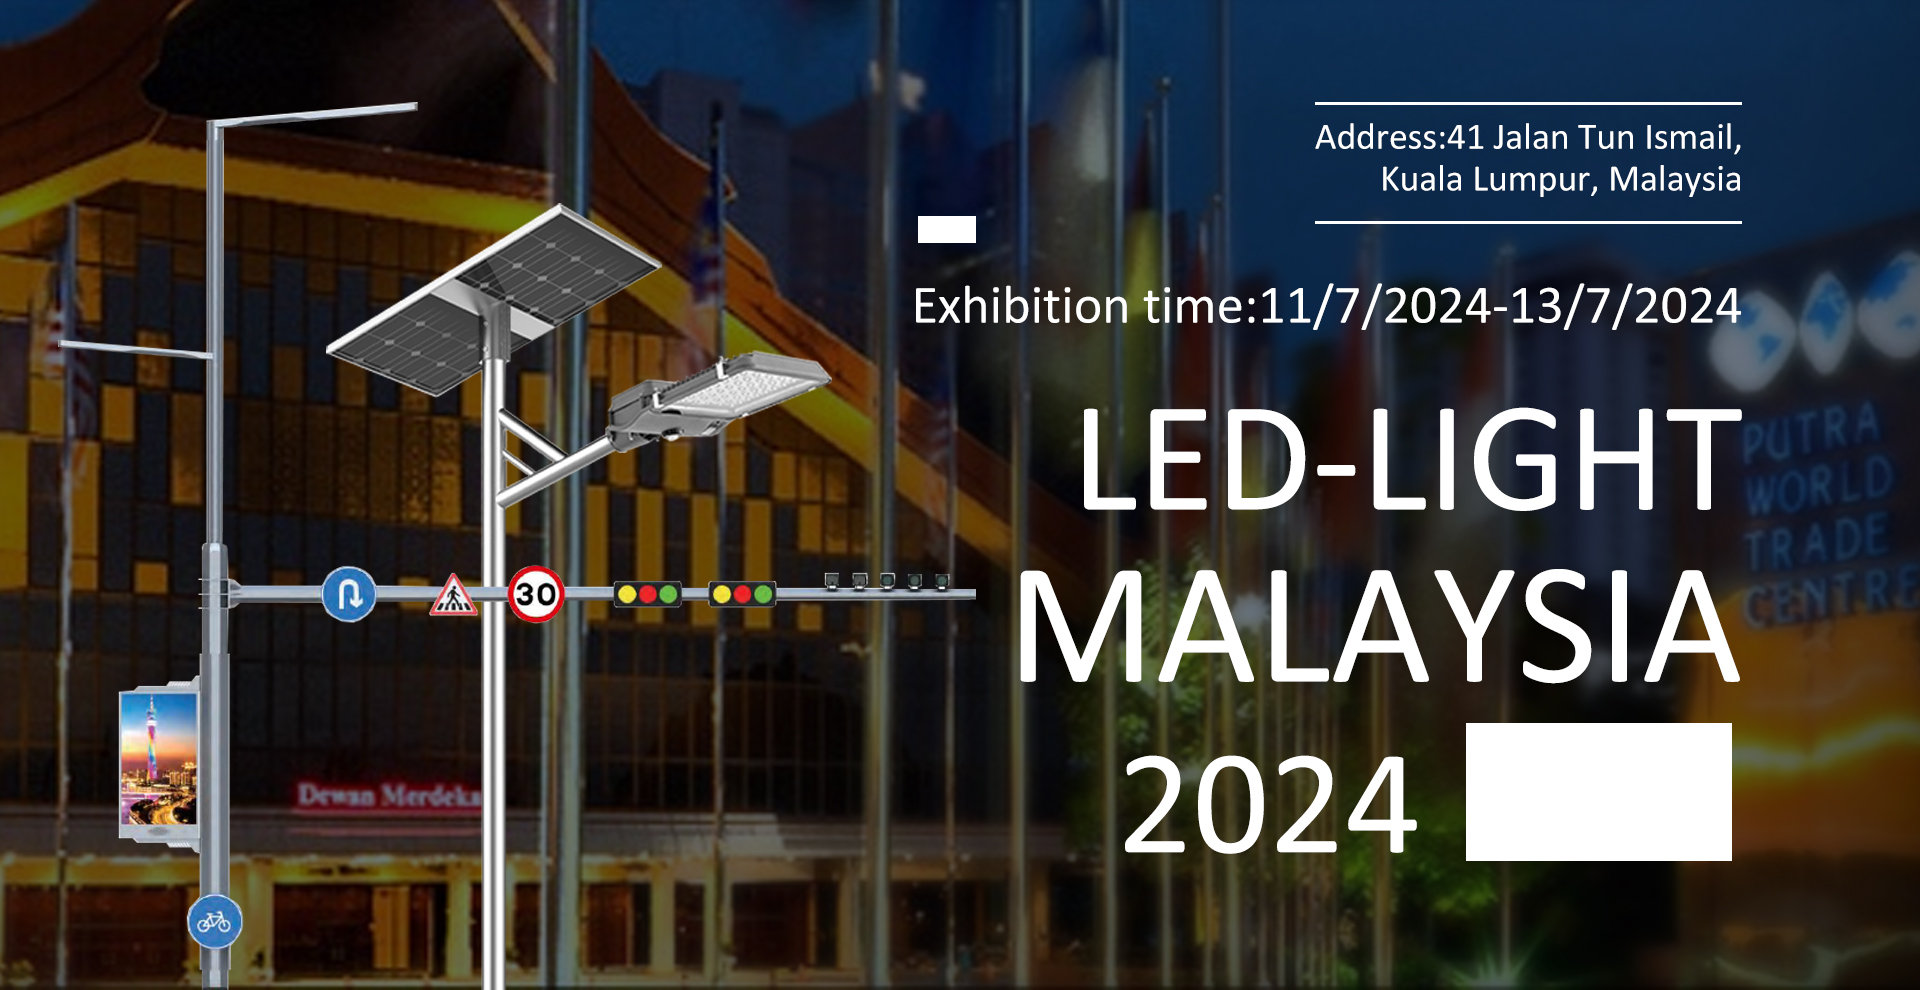 LED-LIGHT MALAYSIA 2024